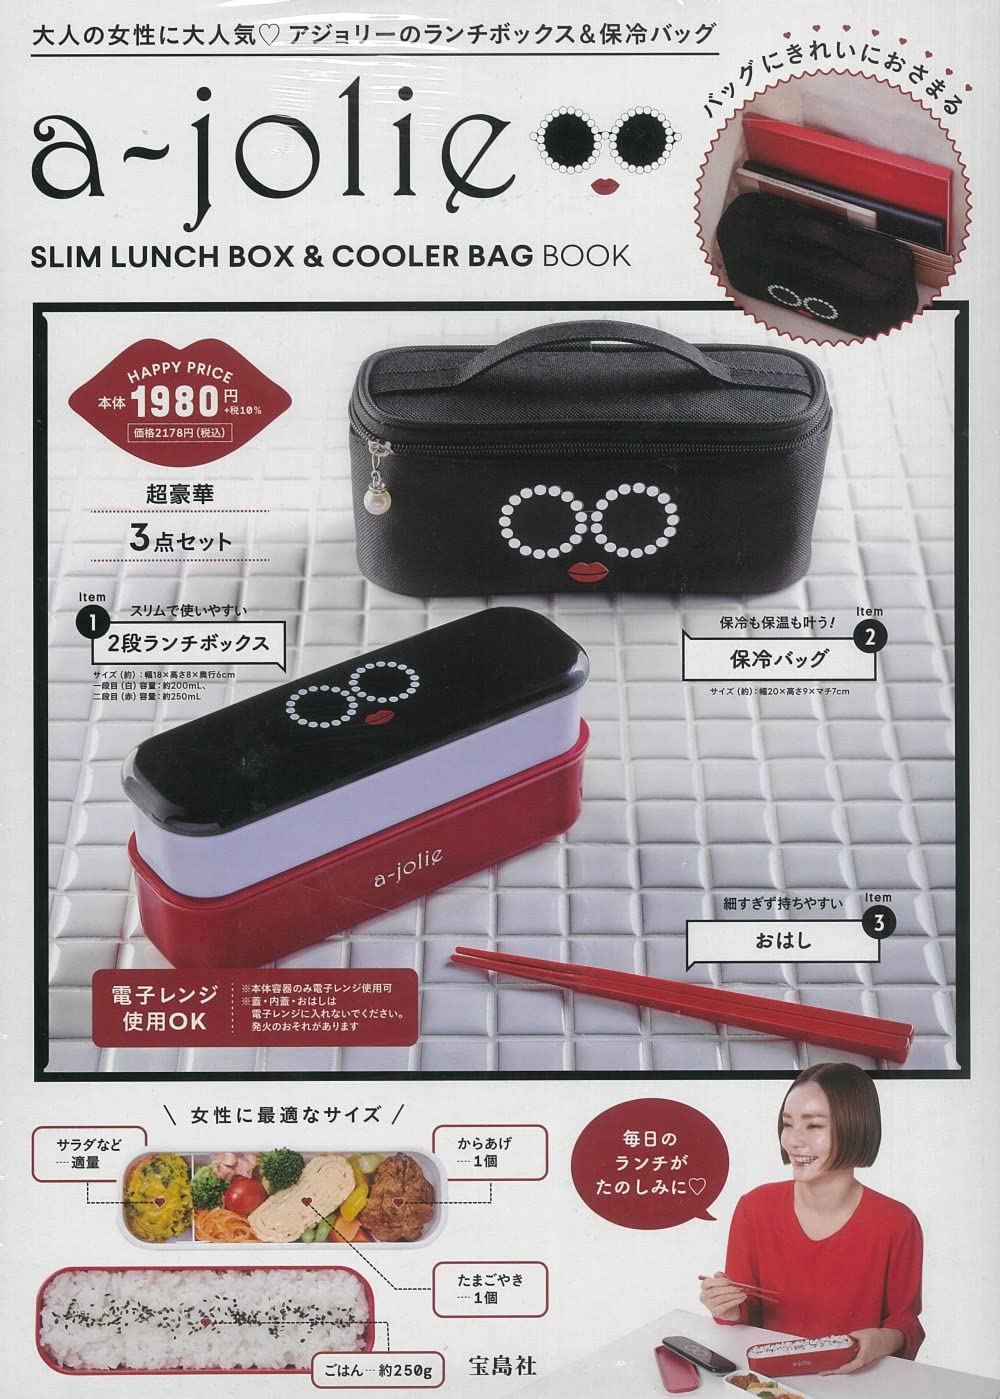 https://s.pacn.ws/1/p/13v/ajolie-slim-lunch-box-cooler-bag-book-717985.1.jpg?v=rbg5dg